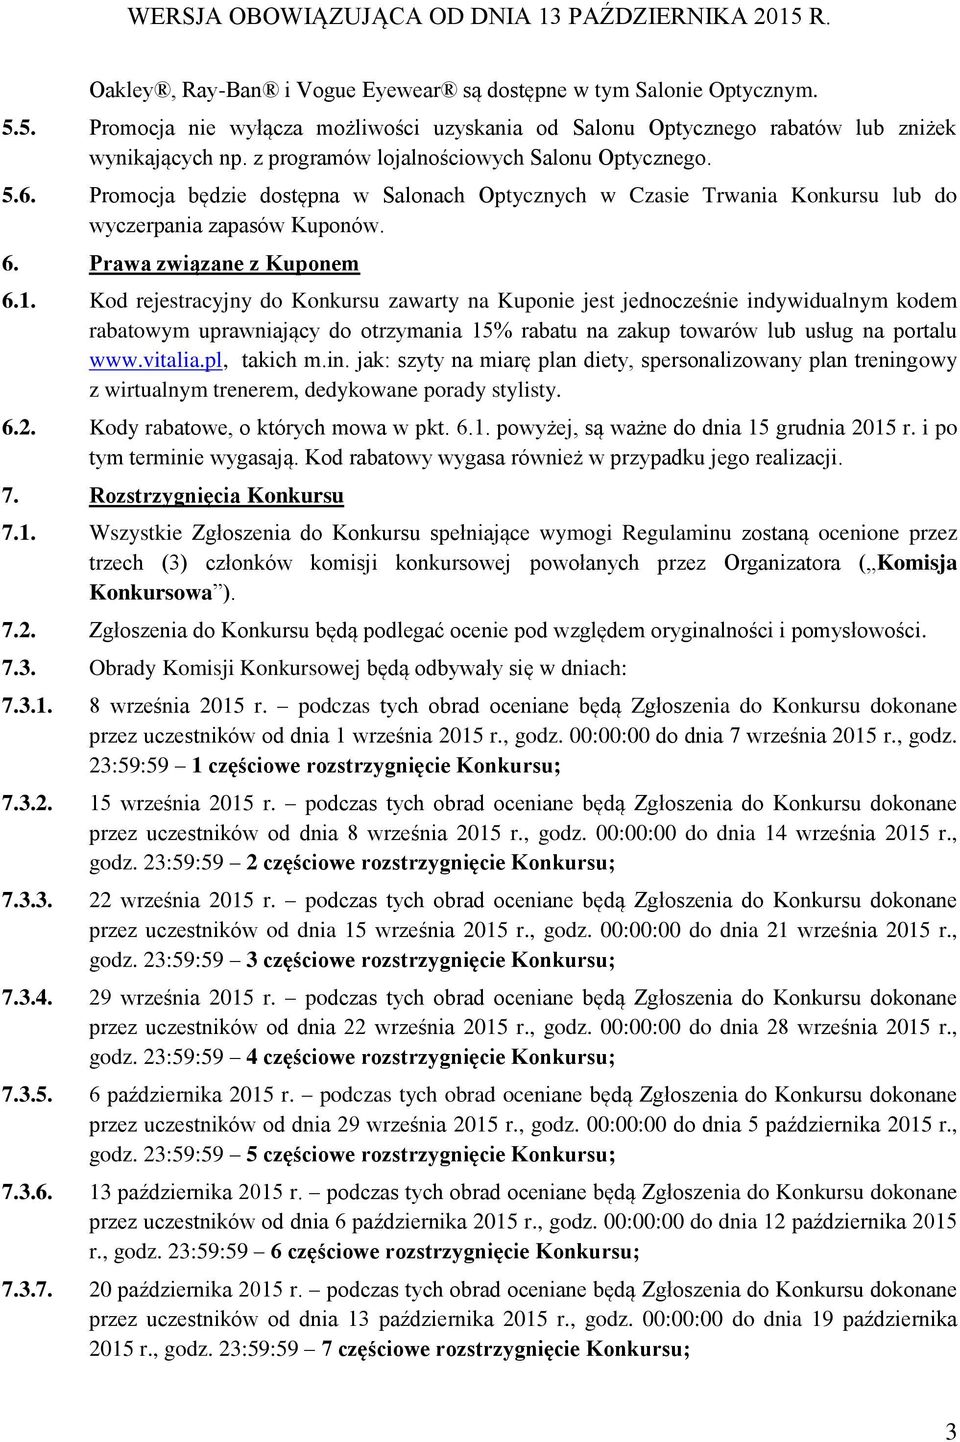 Kod rejestracyjny do Konkursu zawarty na Kuponie jest jednocześnie indywidualnym kodem rabatowym uprawniający do otrzymania 15% rabatu na zakup towarów lub usług na portalu www.vitalia.pl, takich m.